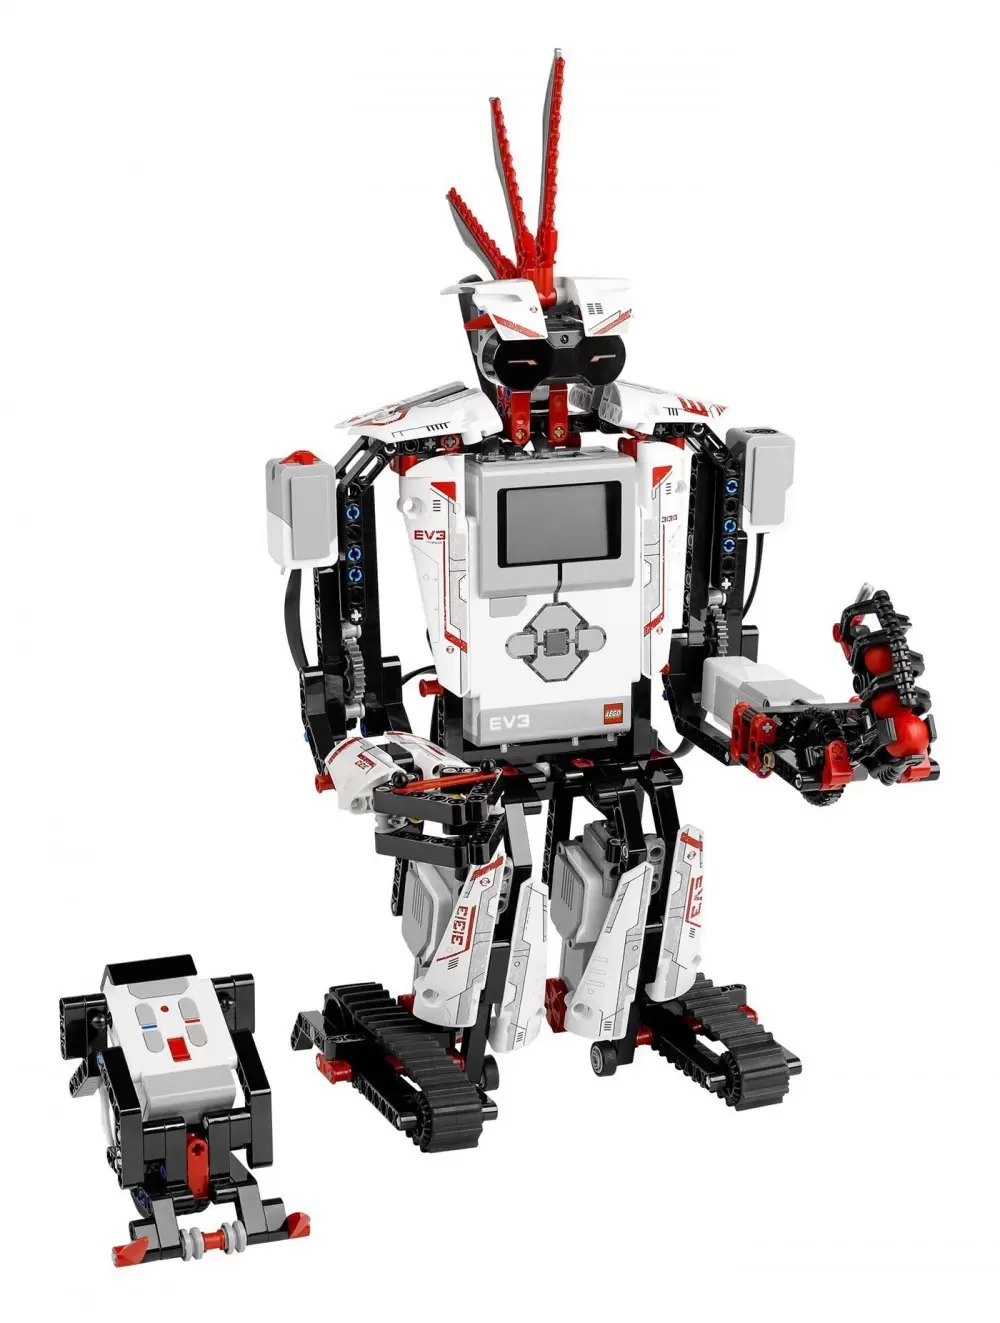 LEGO Mindstorms - Mindstorms EV3